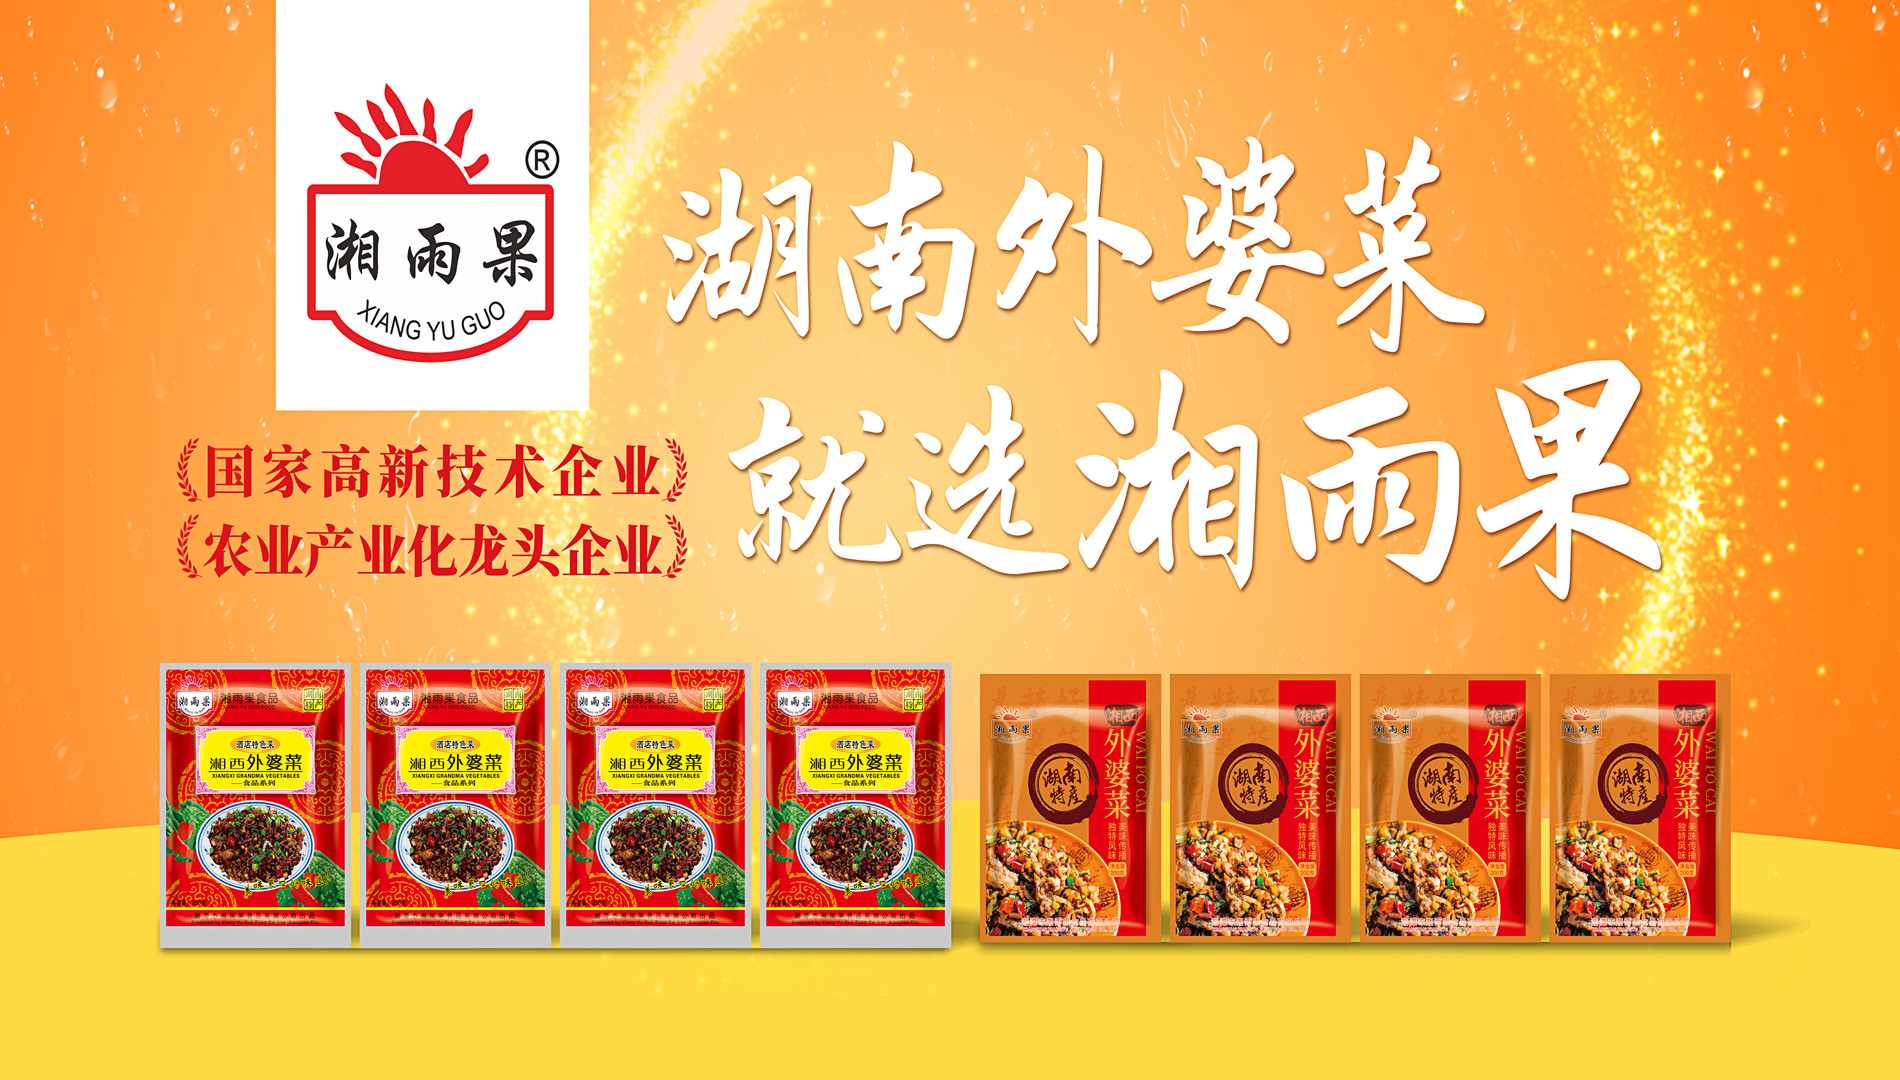 Xiang Yu Guo Food-Business Benchmark di l'Industria di Piatti Prefatti